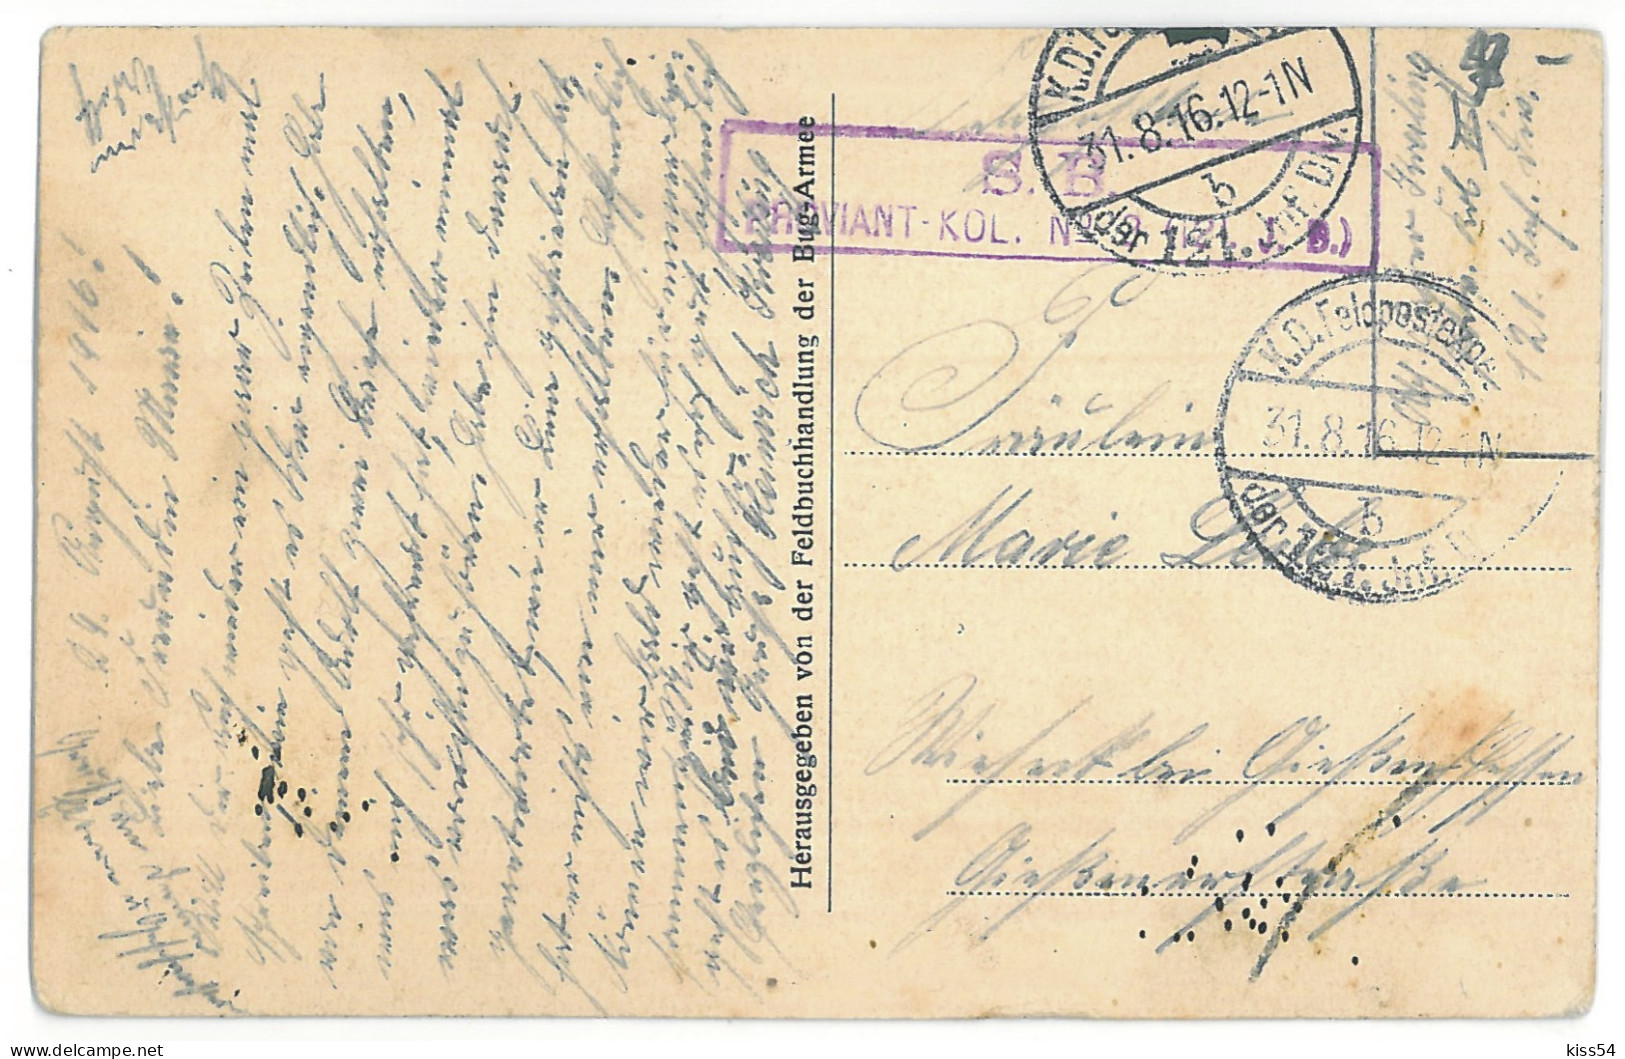 BL 31 - 13992 KOBRYN, Belarus, Fishermen - Old Postcard, CENSOR - Used - 1916 - Bielorussia